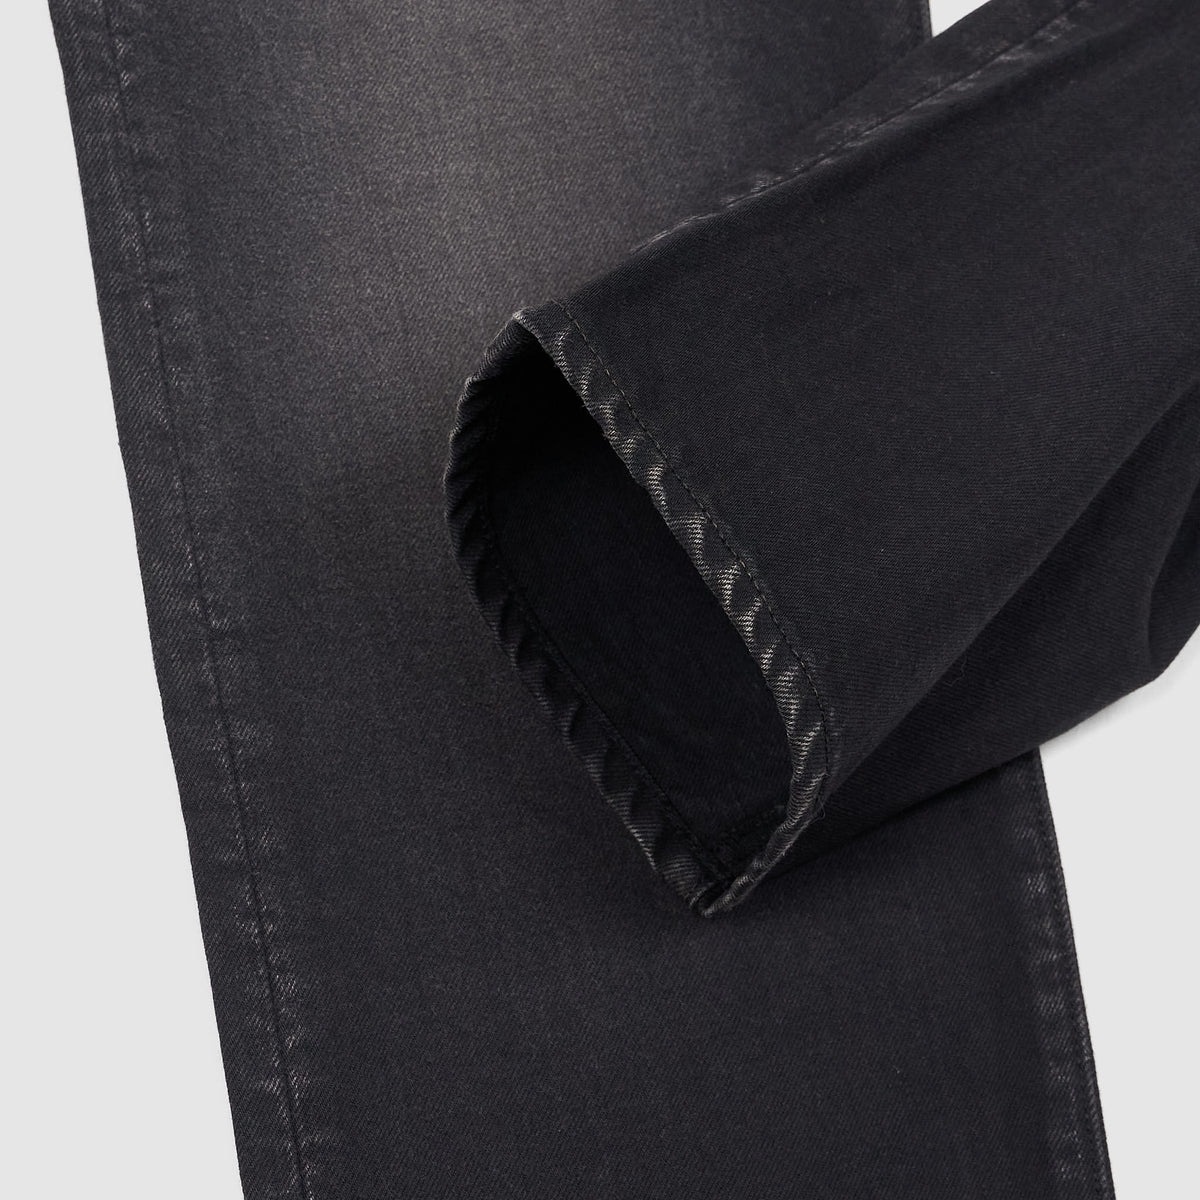 Kapital 5-Pocket Monkey Cisco 5 Pocket Vintage Washed Black Denim Jeans